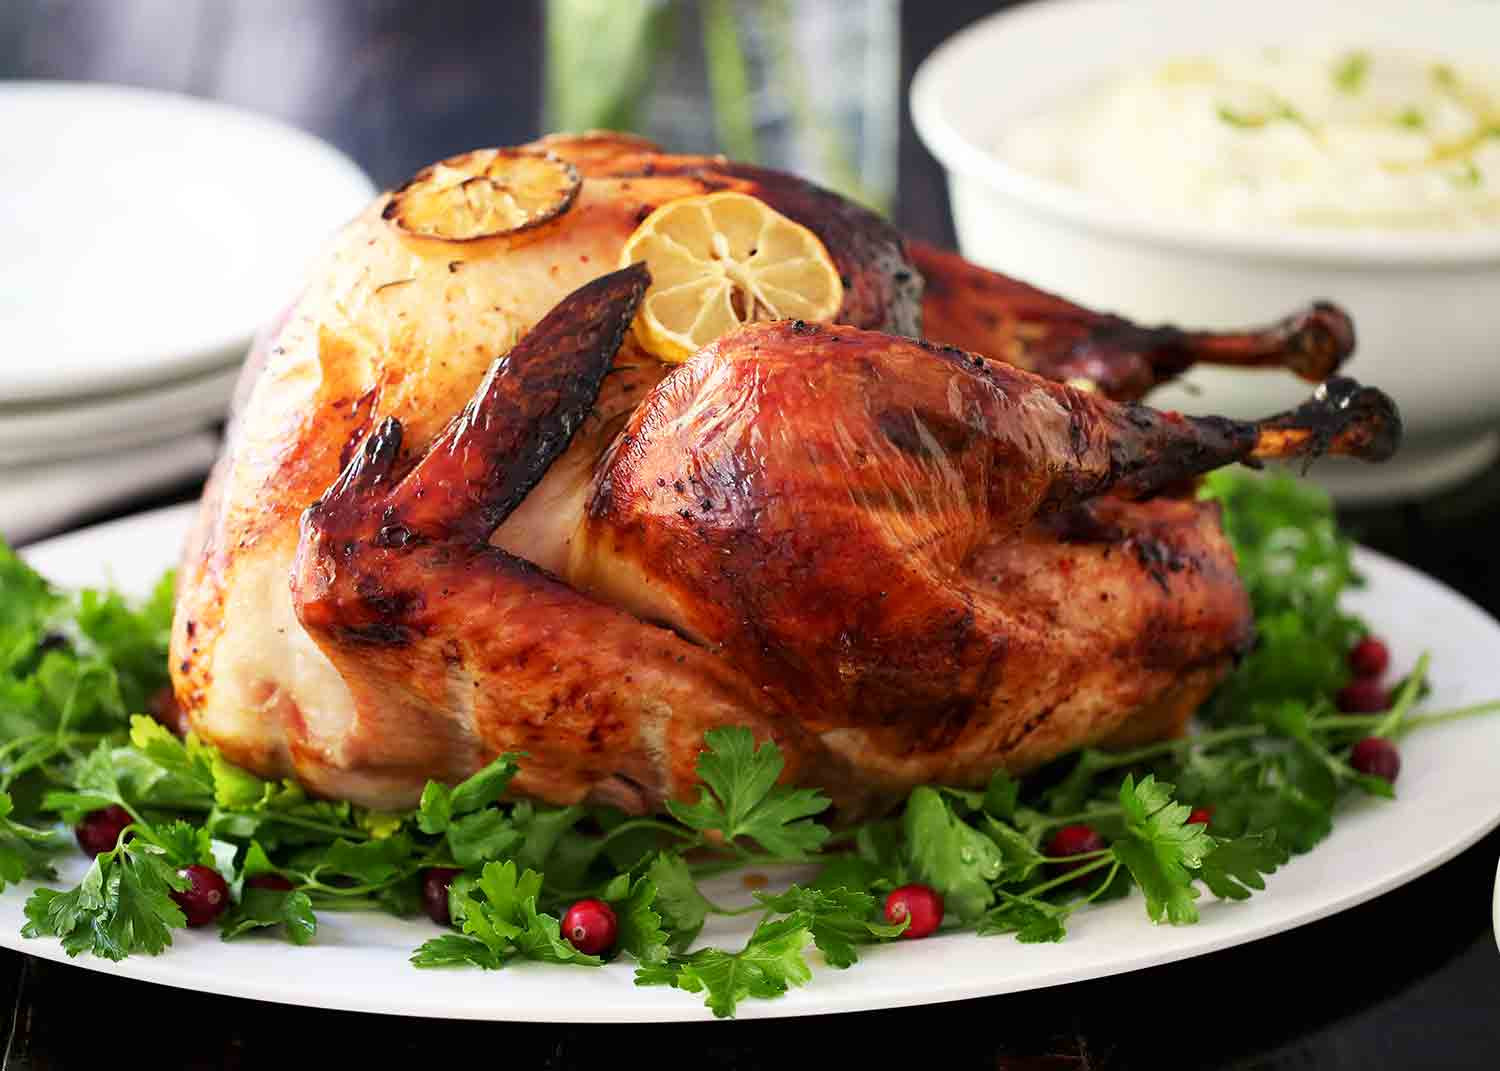 Best Thanksgiving Turkey Brine
 EASY 3 Ingre nt Turkey Brine Recipe I Heart Naptime